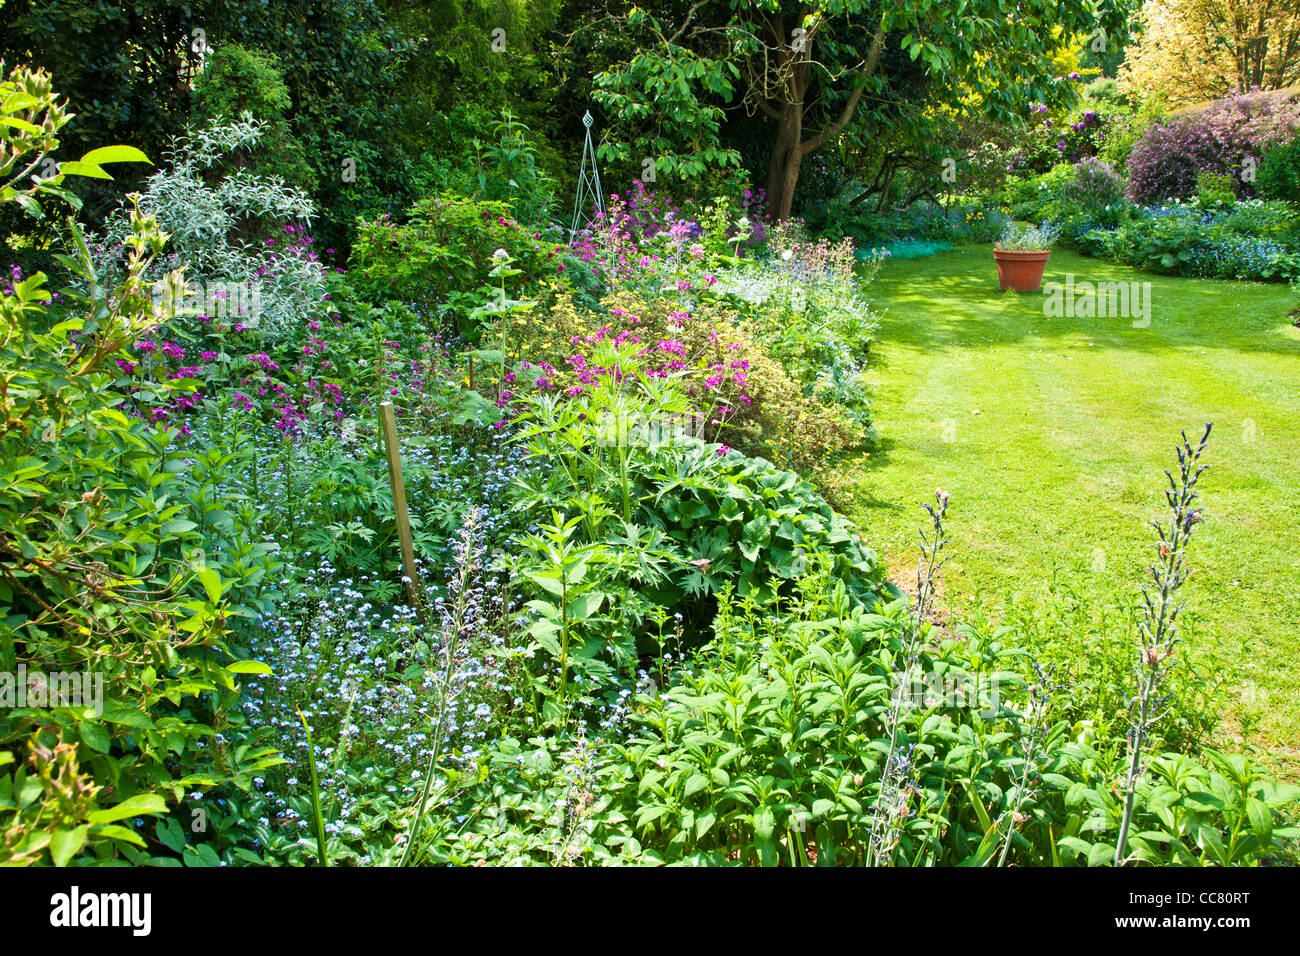 Un chemin herbeux entre vivaces et arbustes frontières dans un manoir de campagne Anglais jardin au début de l'été dans le Wiltshire, England, UK Banque D'Images